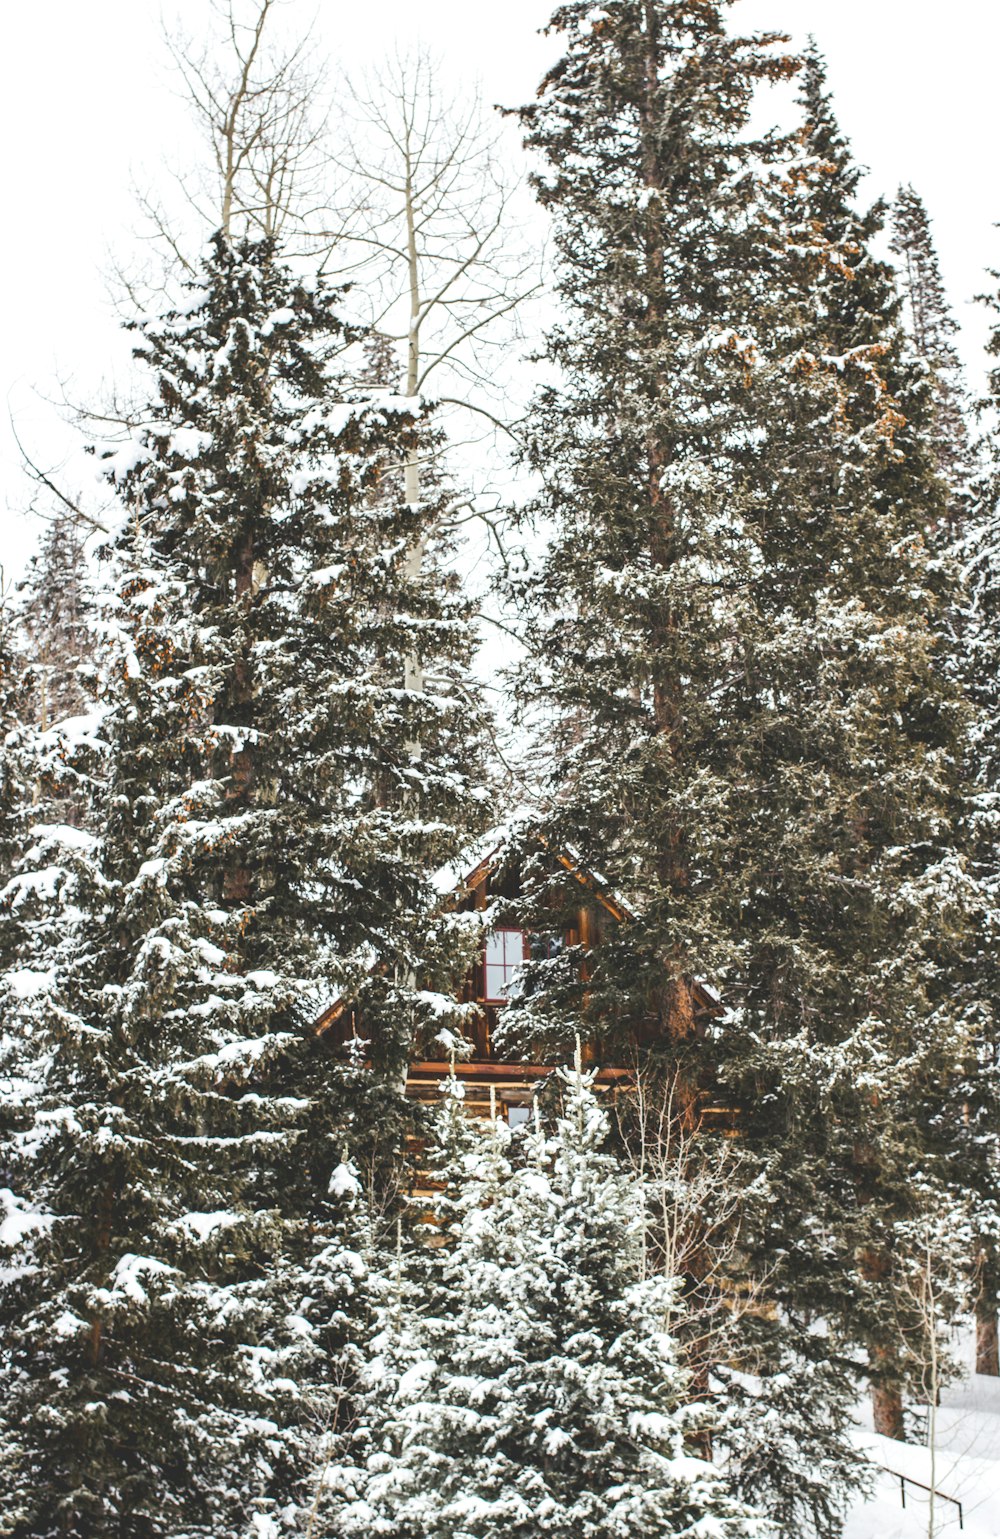 Photographie de maison brune entourée d’arbres verts de la forêt